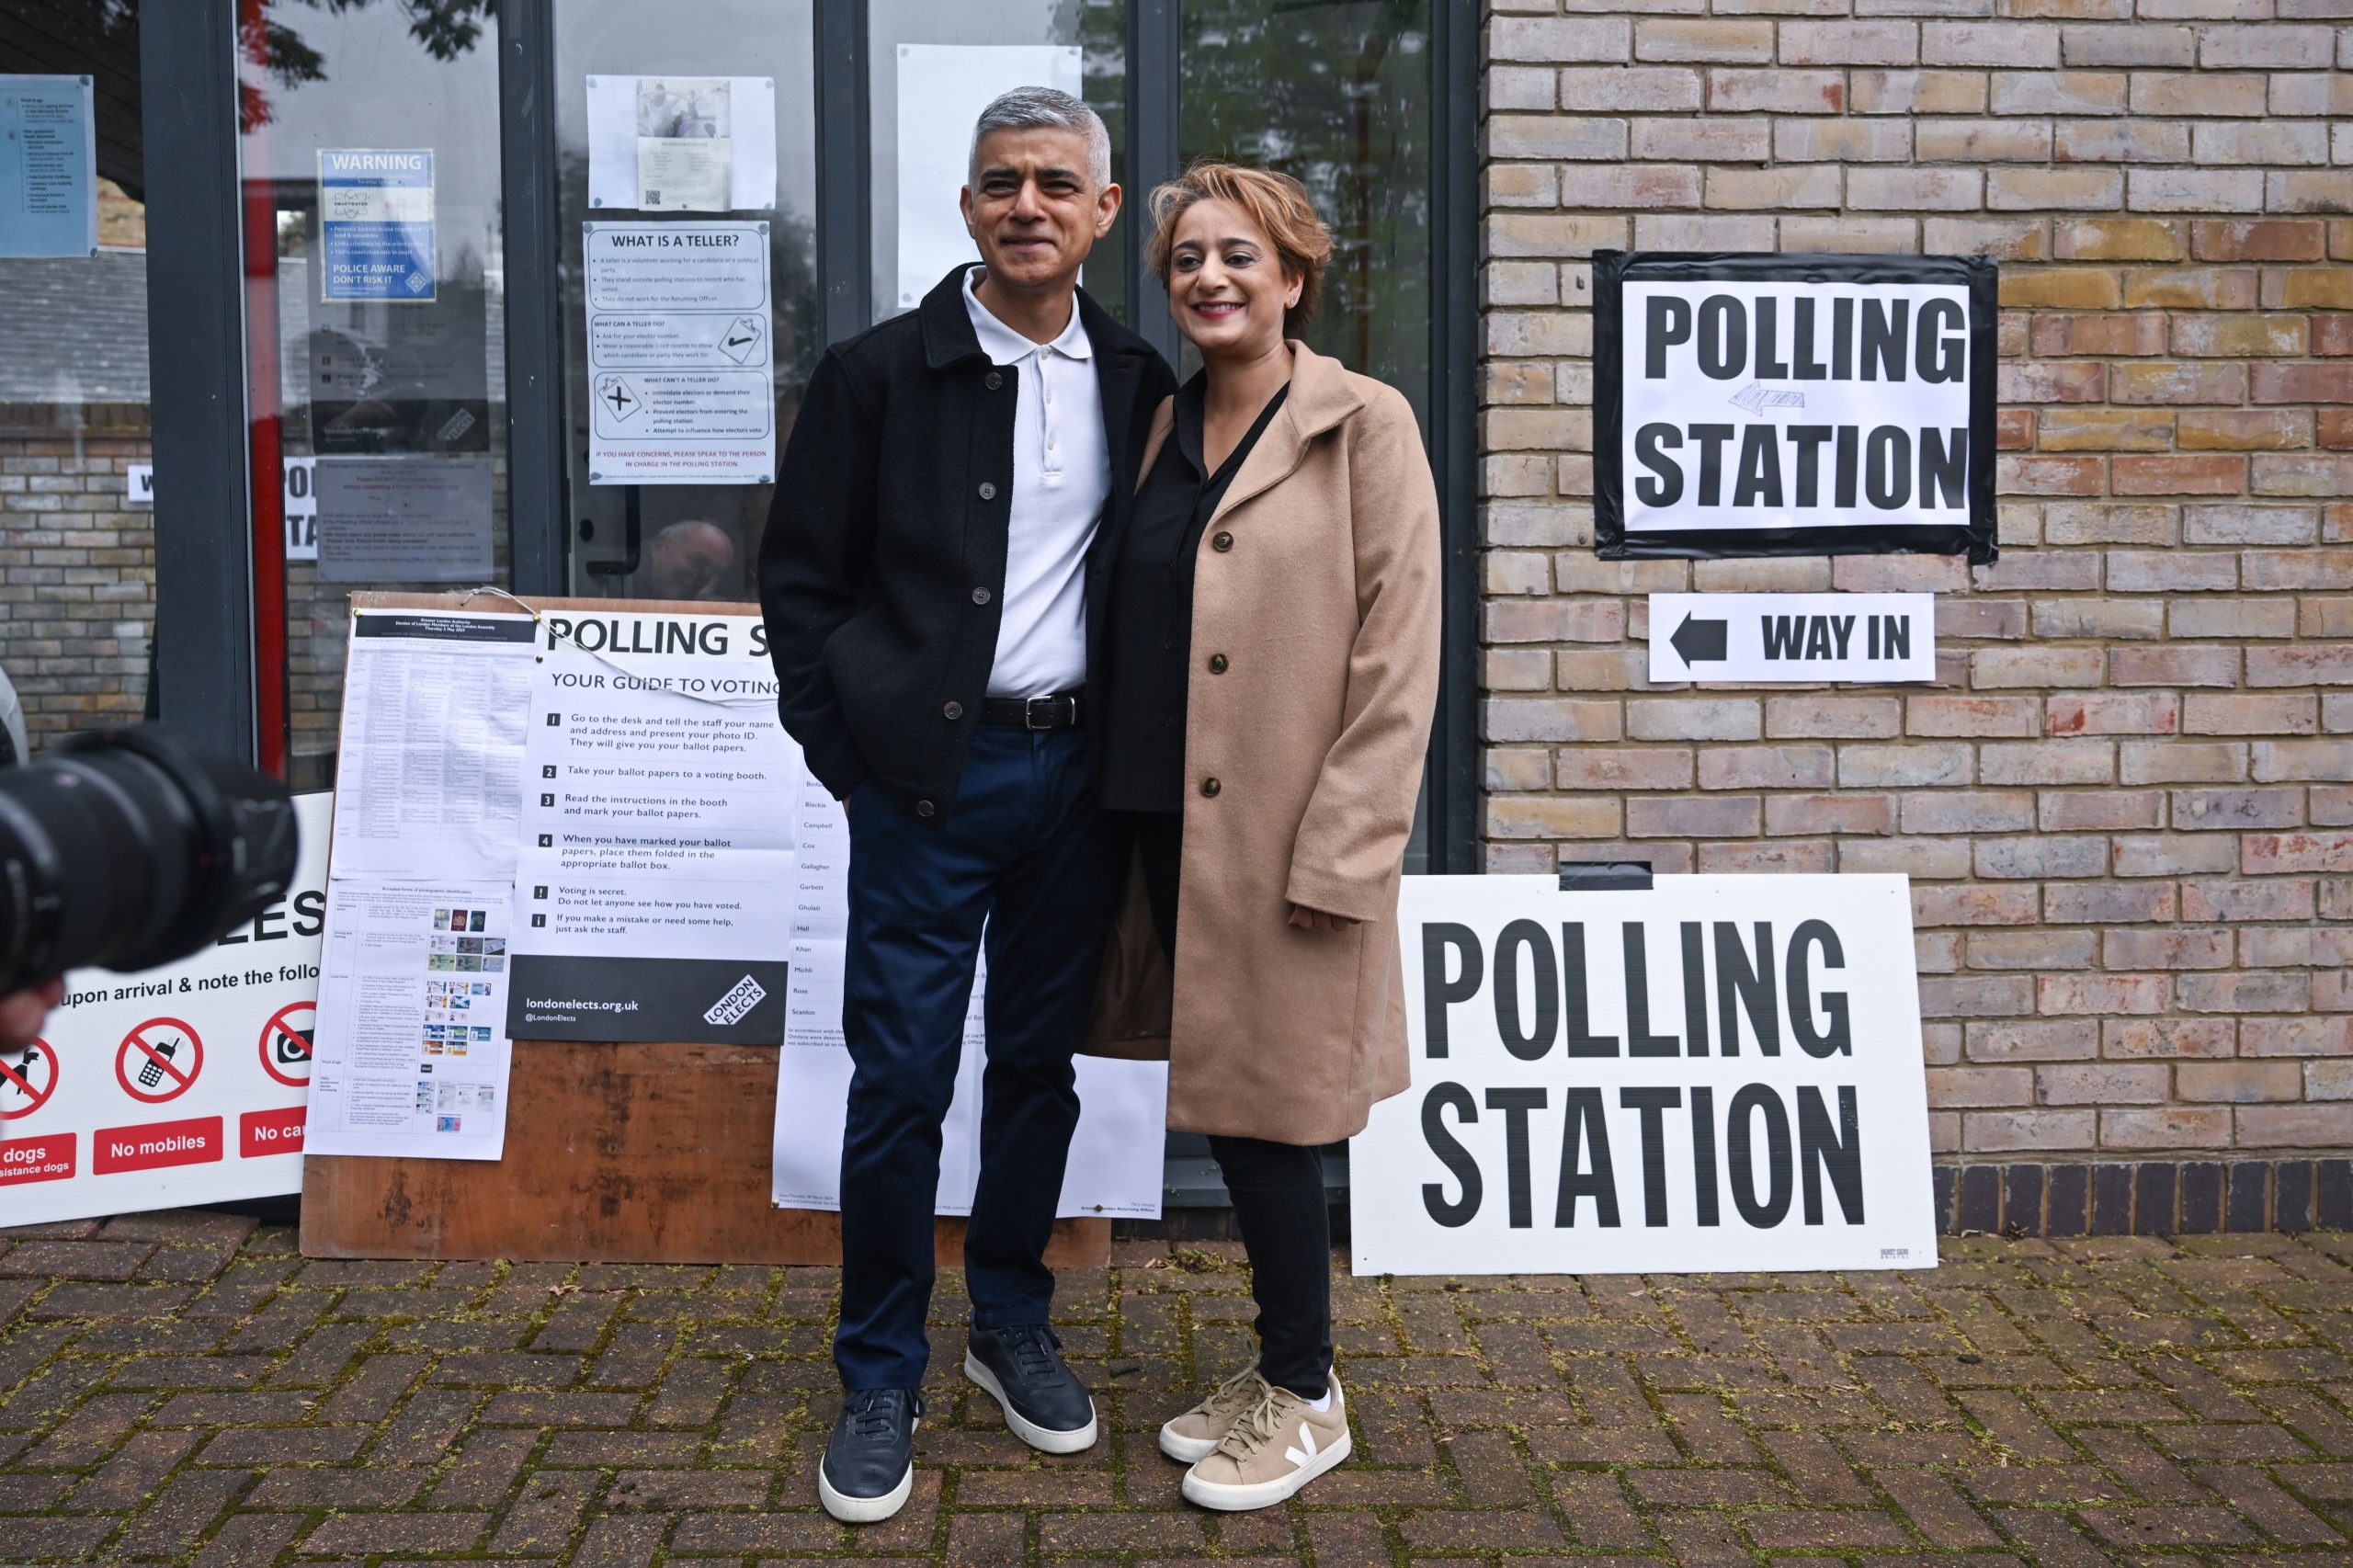 En Londres, se espera que Sadiq Khan, quien fue acompañado a la estación de votación por su esposa, Saadiya, se enfrente a un desafío de su rival conservadora Susan Hall